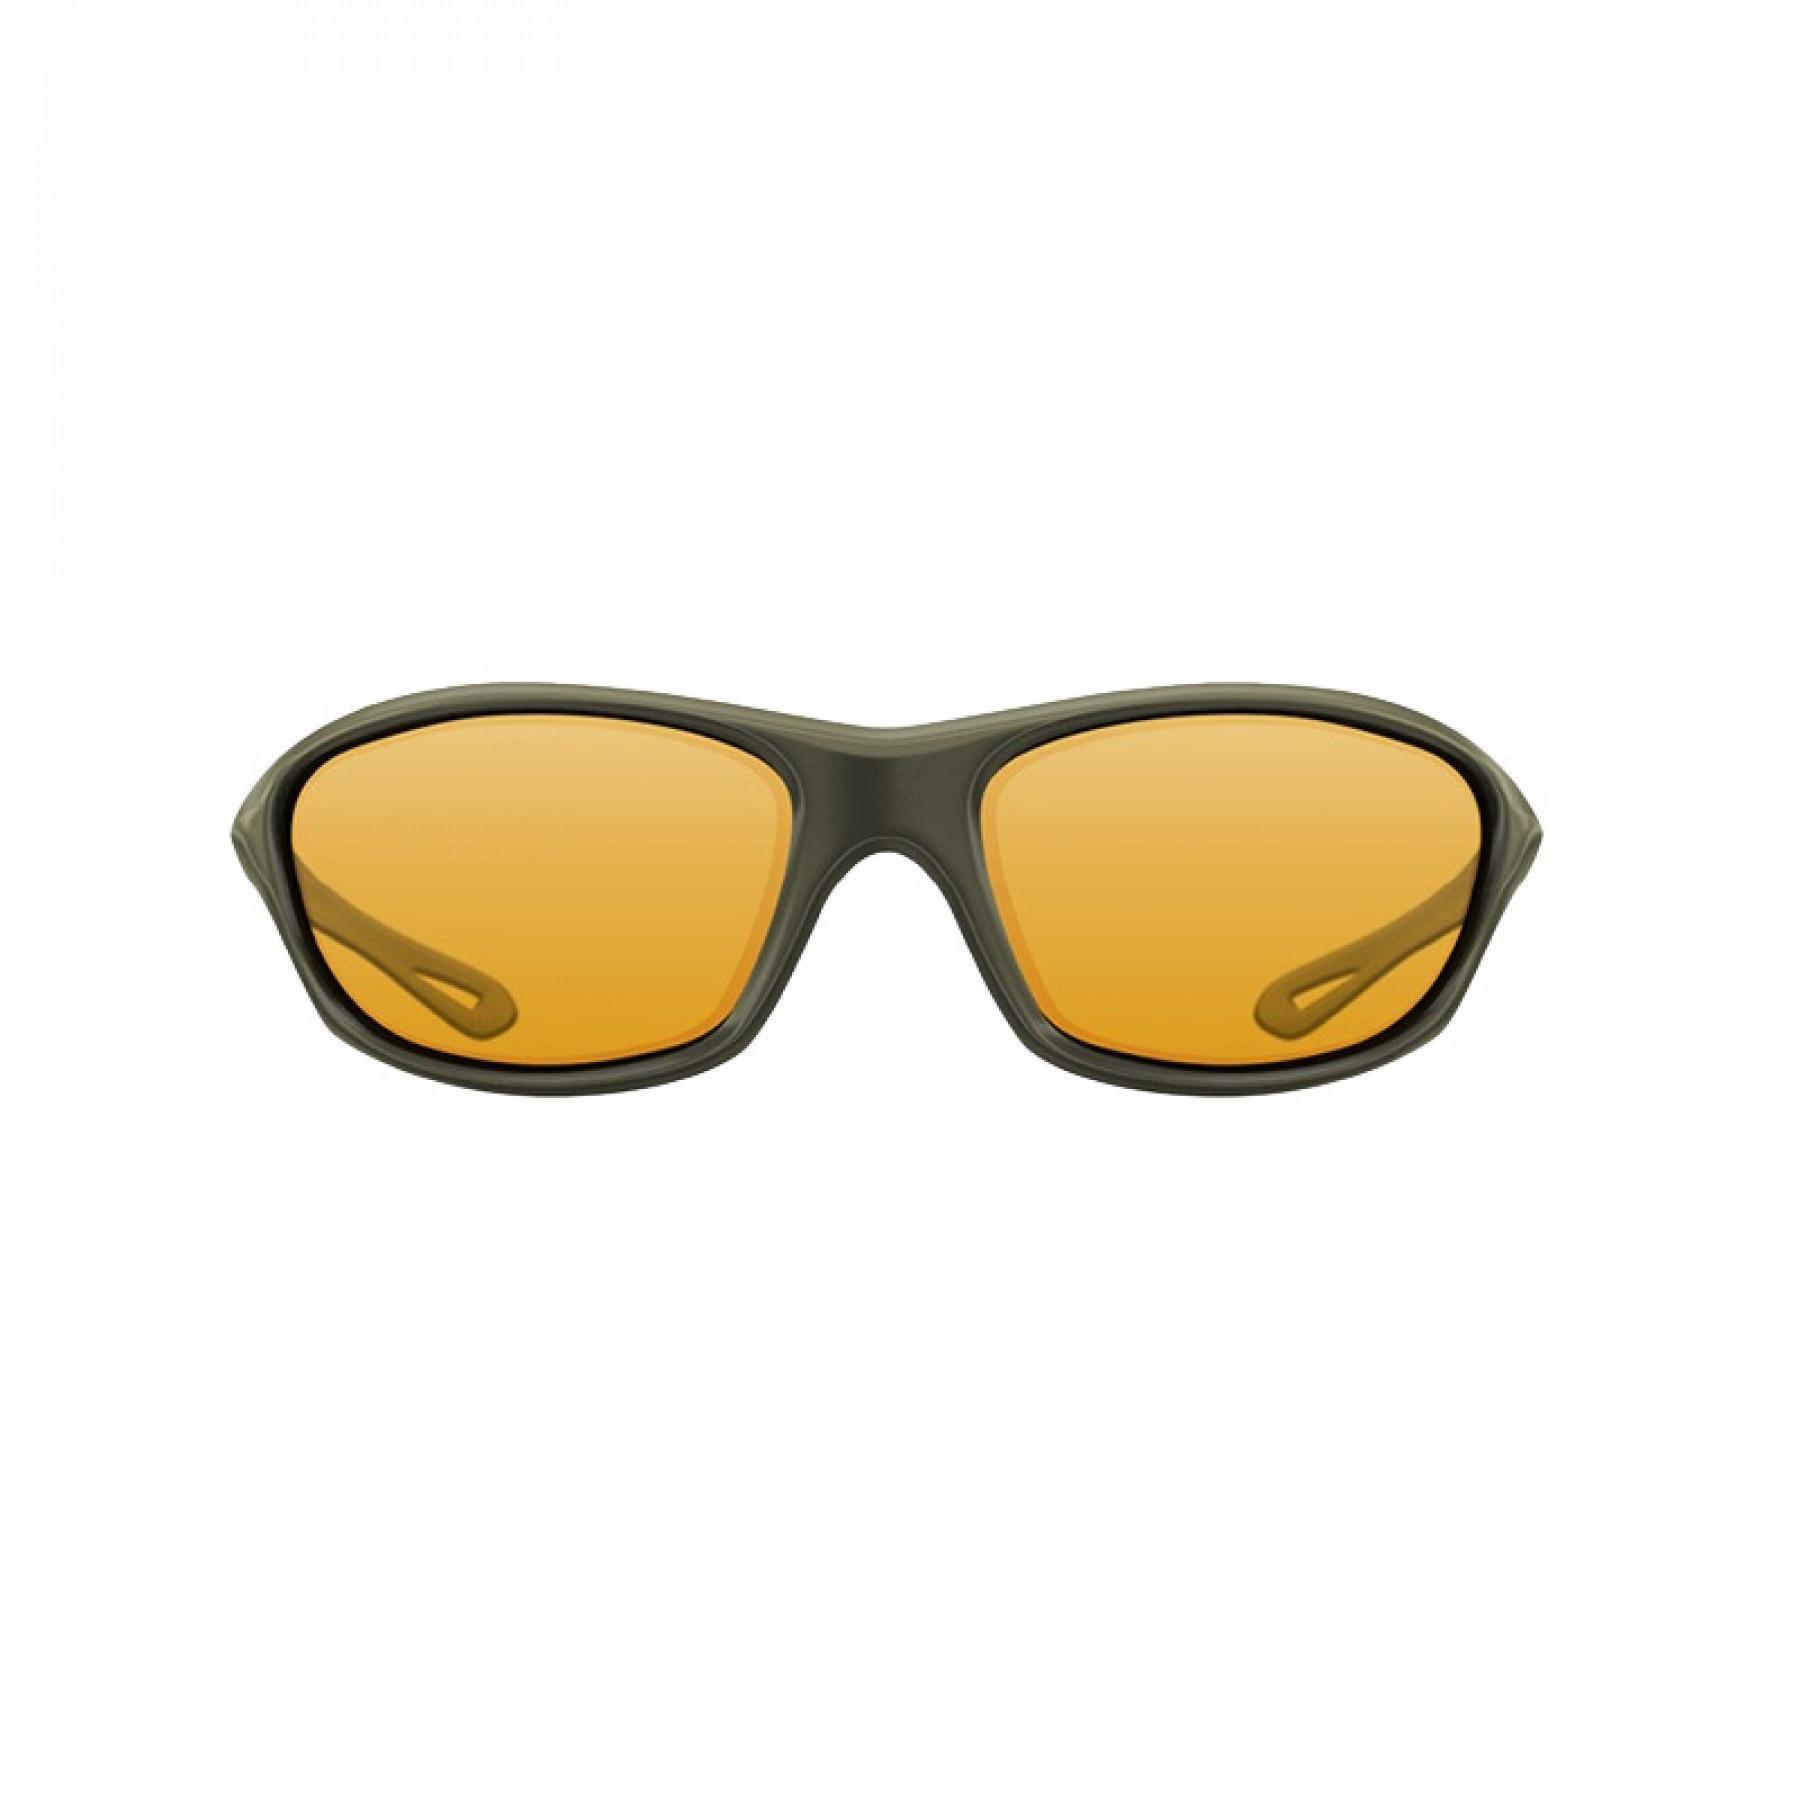 Lunettes de soleil Korda Sunglasses Wraps Gloss